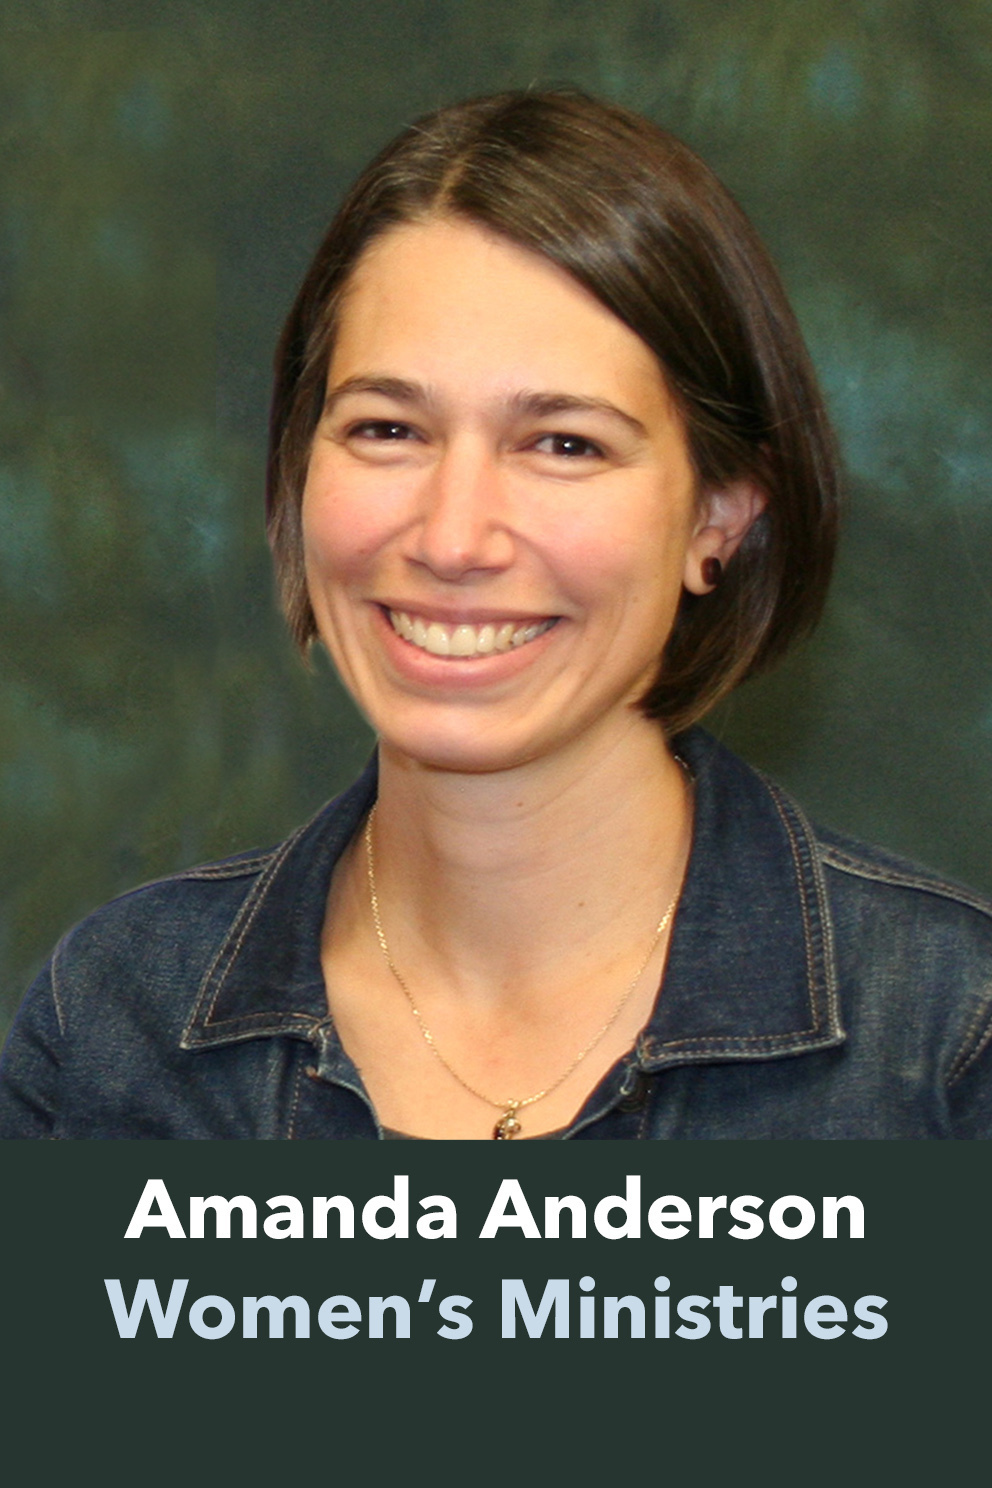 Amanda Anderson